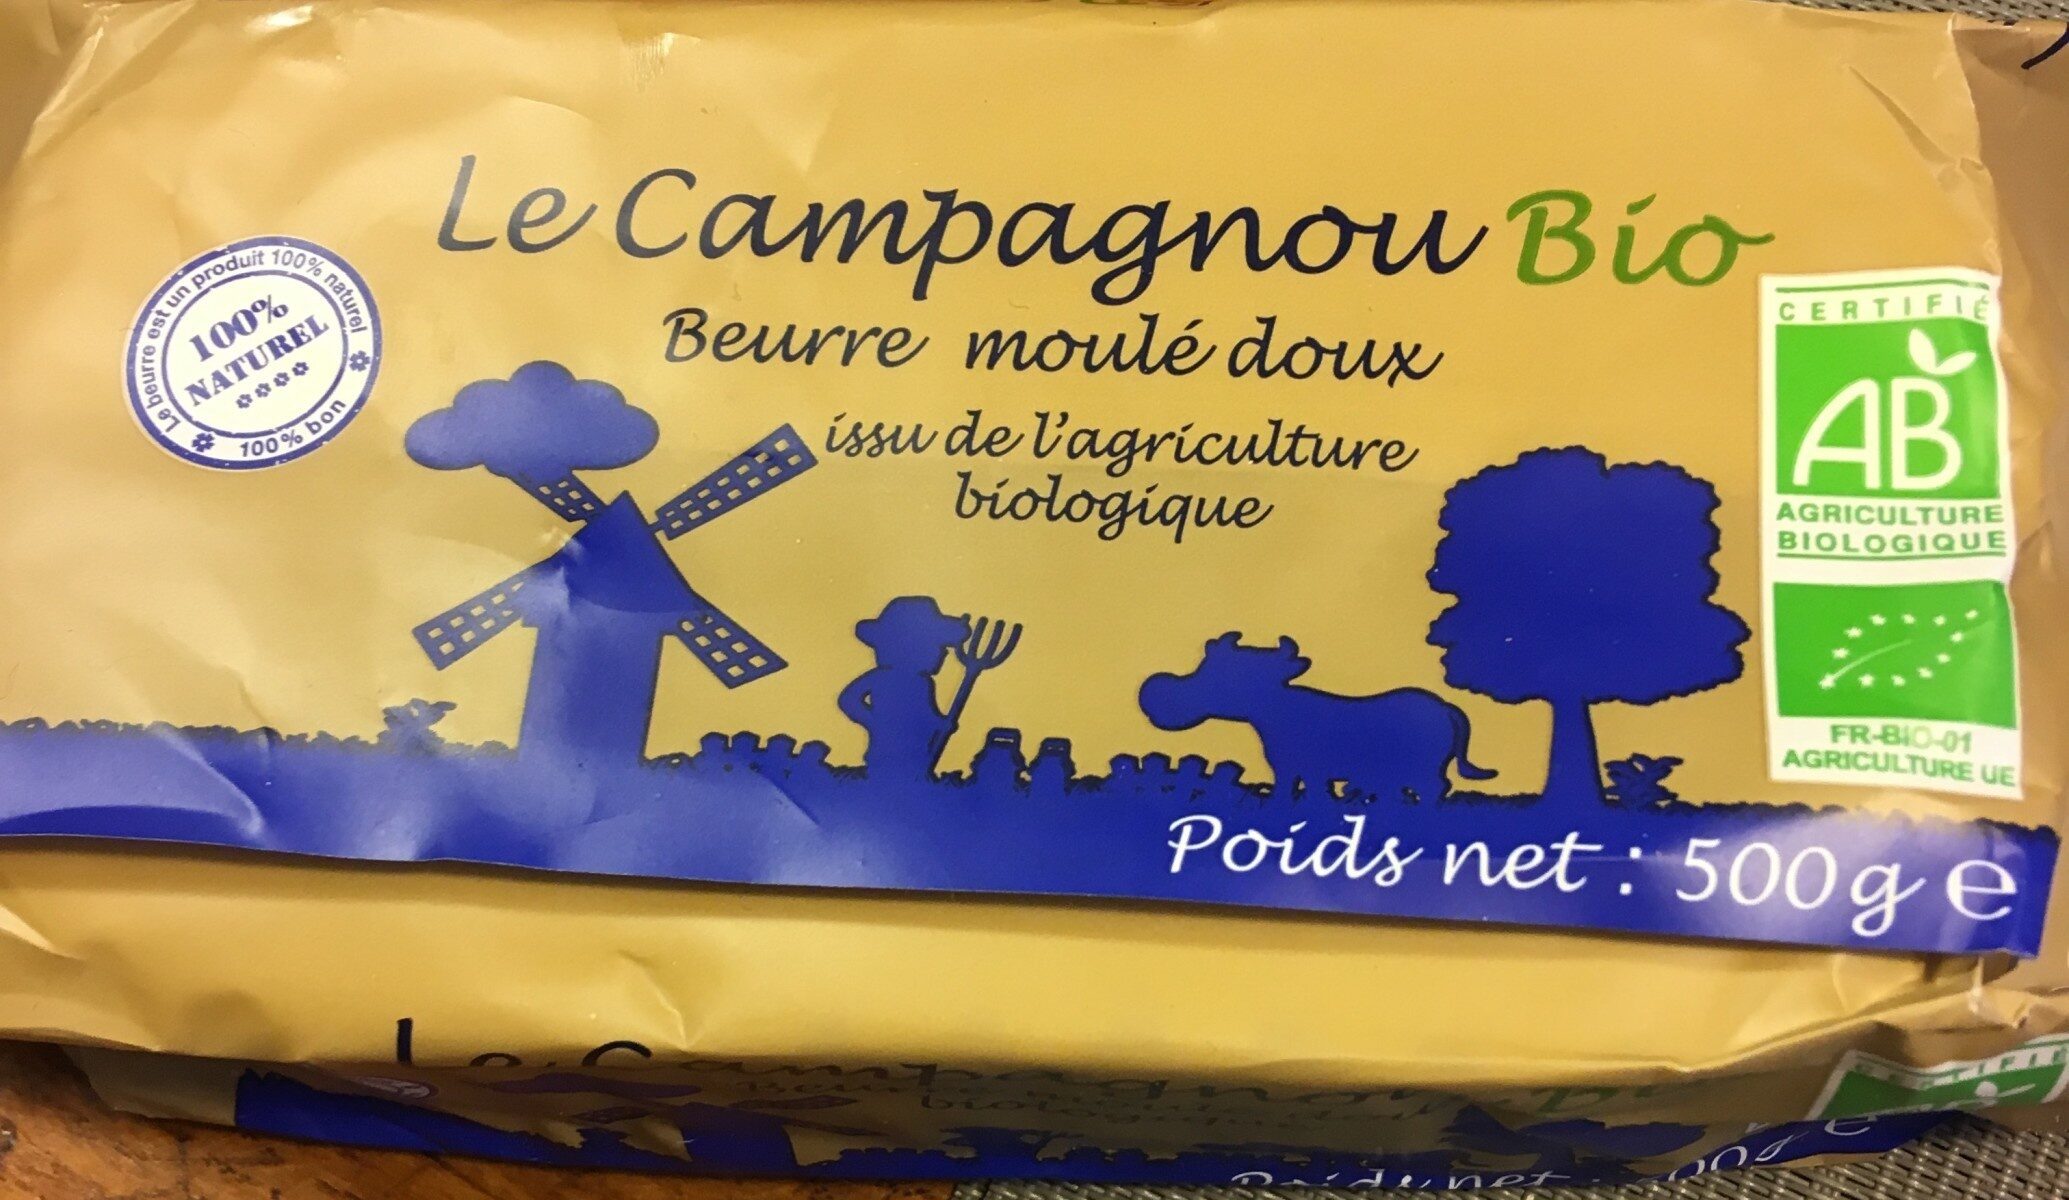 Beurre moulé doux biologique - Product - fr